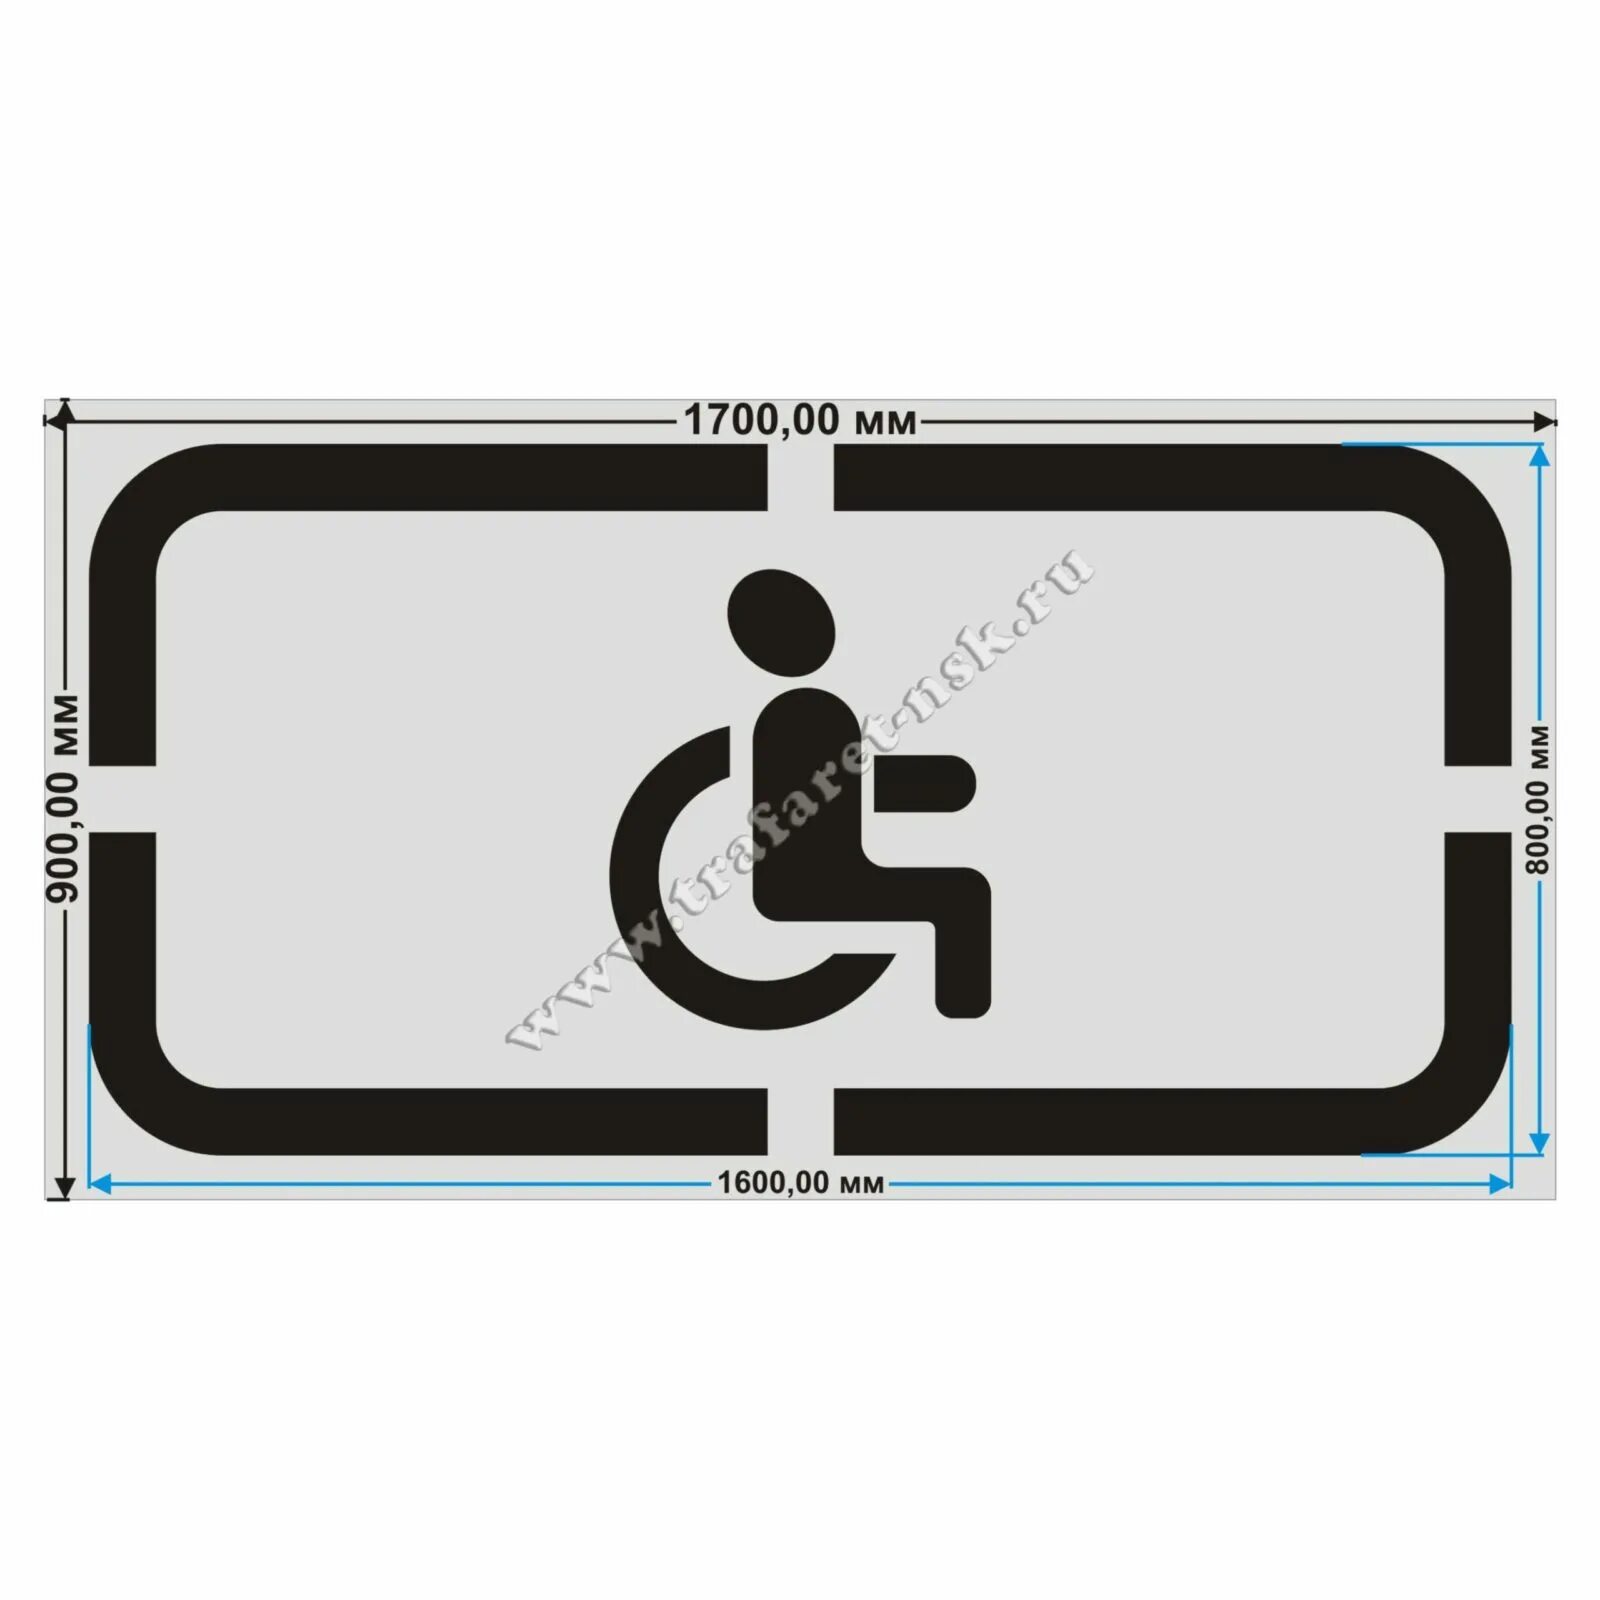 24 3 а3. Знак инвалид разметка 1.24.3. Разметка парковка для инвалидов 1.24.3. Дорожная разметка инвалид 1.24.3 Размеры. Трафарет парковка для инвалидов.